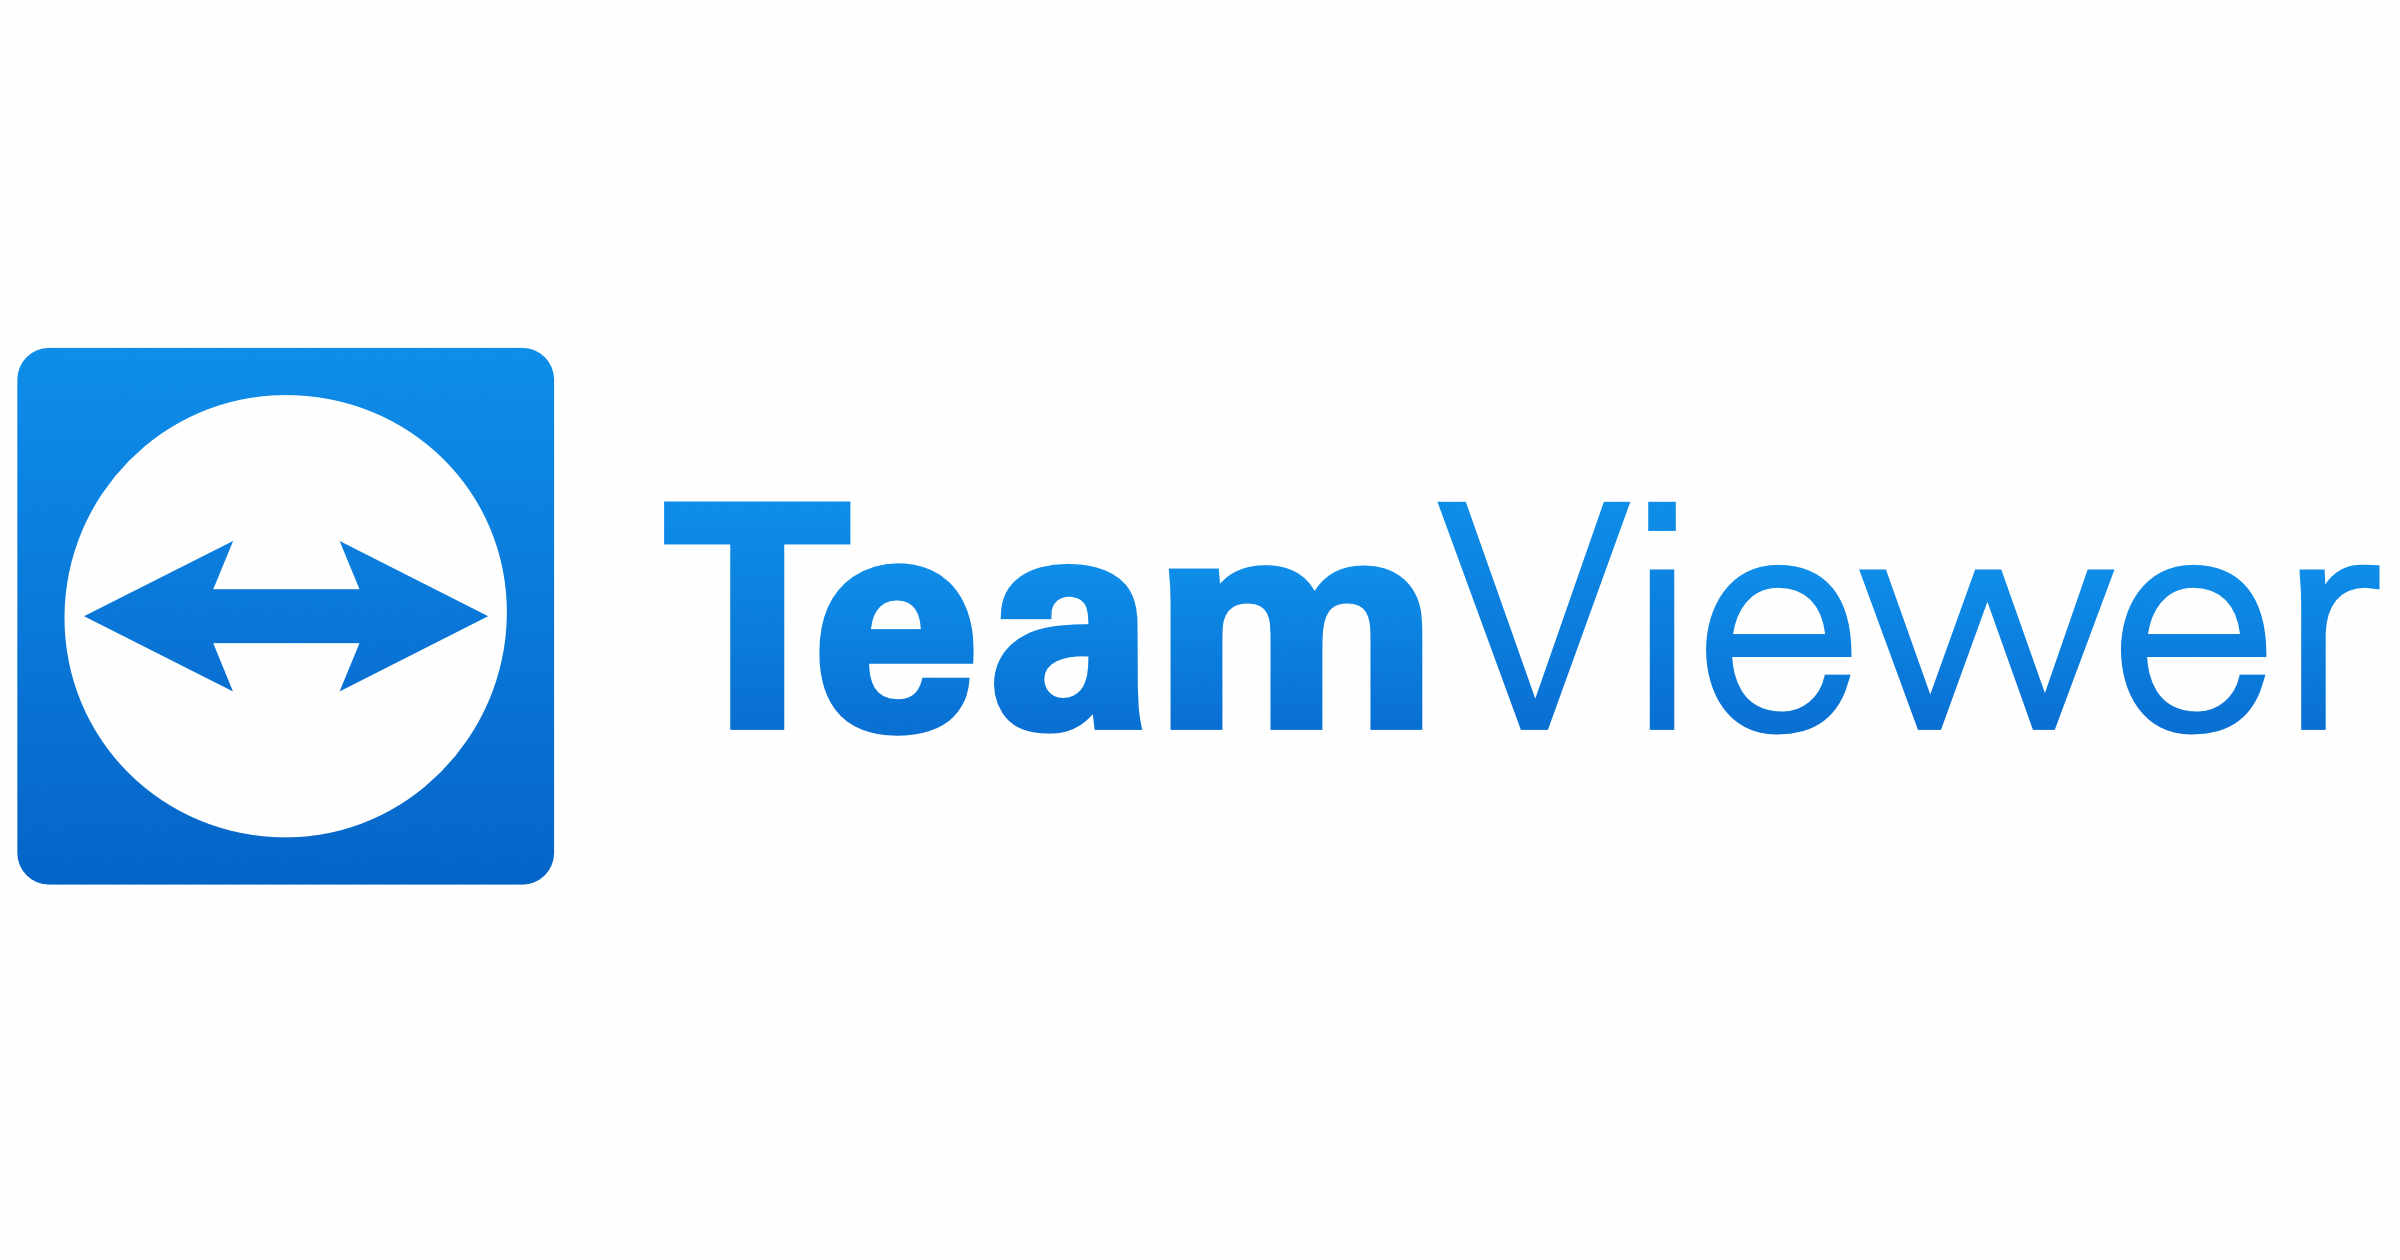 [PL] Deploy aplikacji TeamViewer przez Intune dla Androida